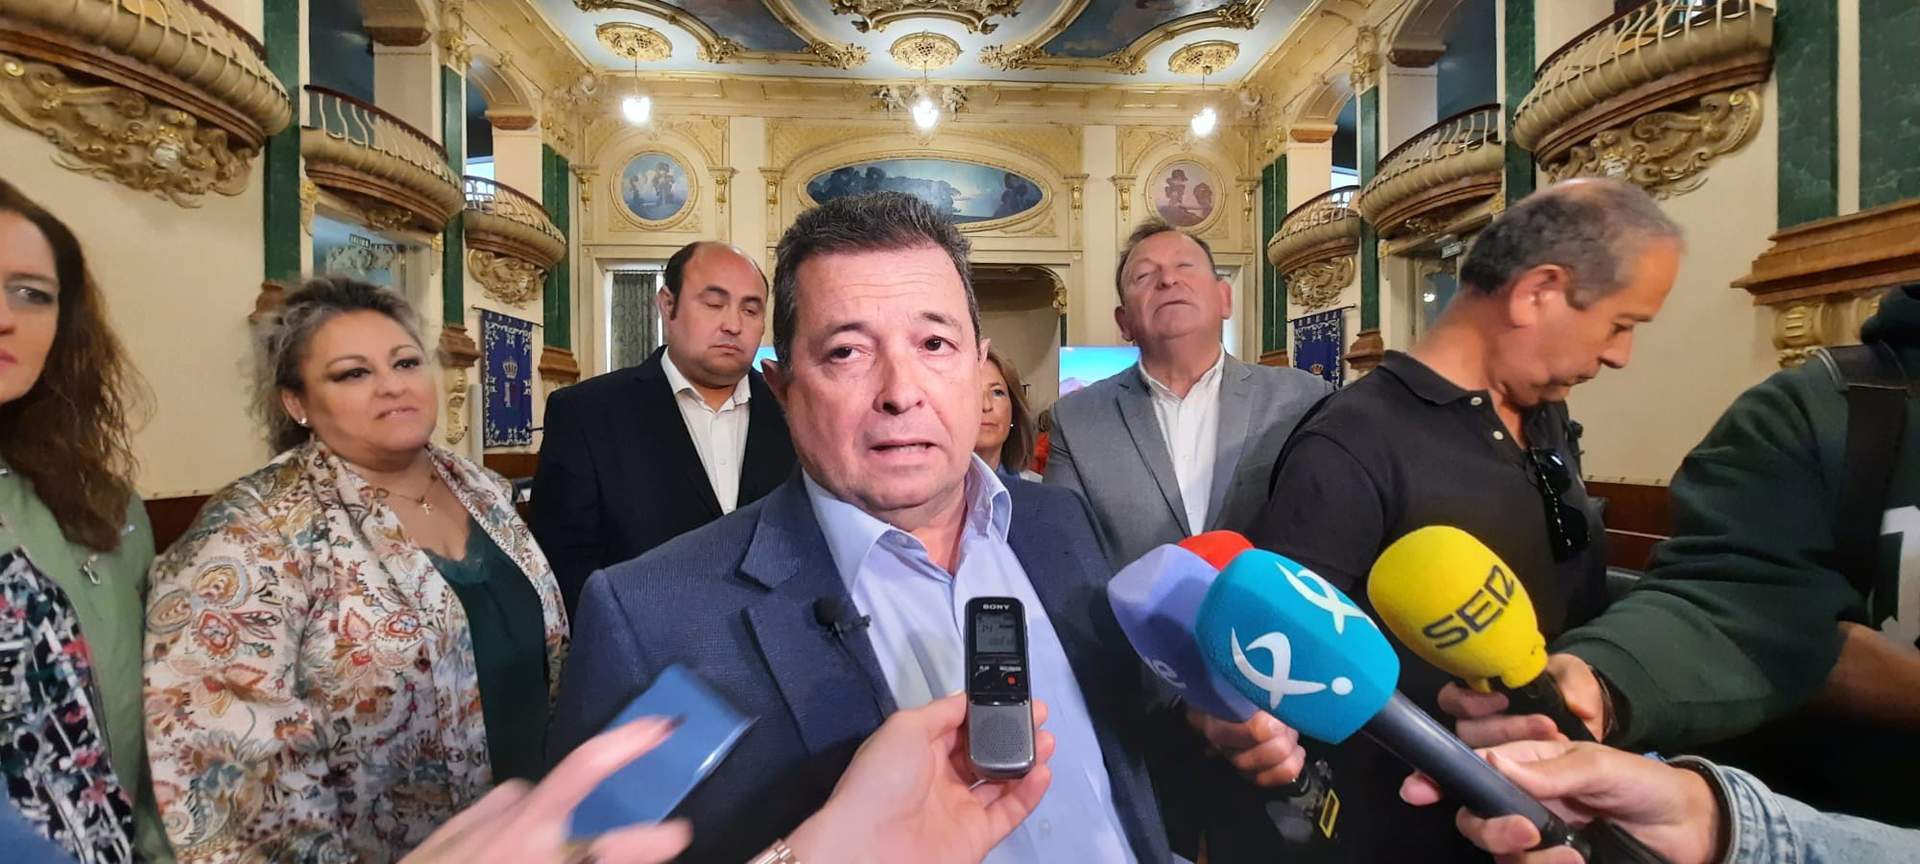 El PP dice que demostrará en la comisión de la Diputación de Badajoz que hay  trato de favor  con el hermano de Sánchez